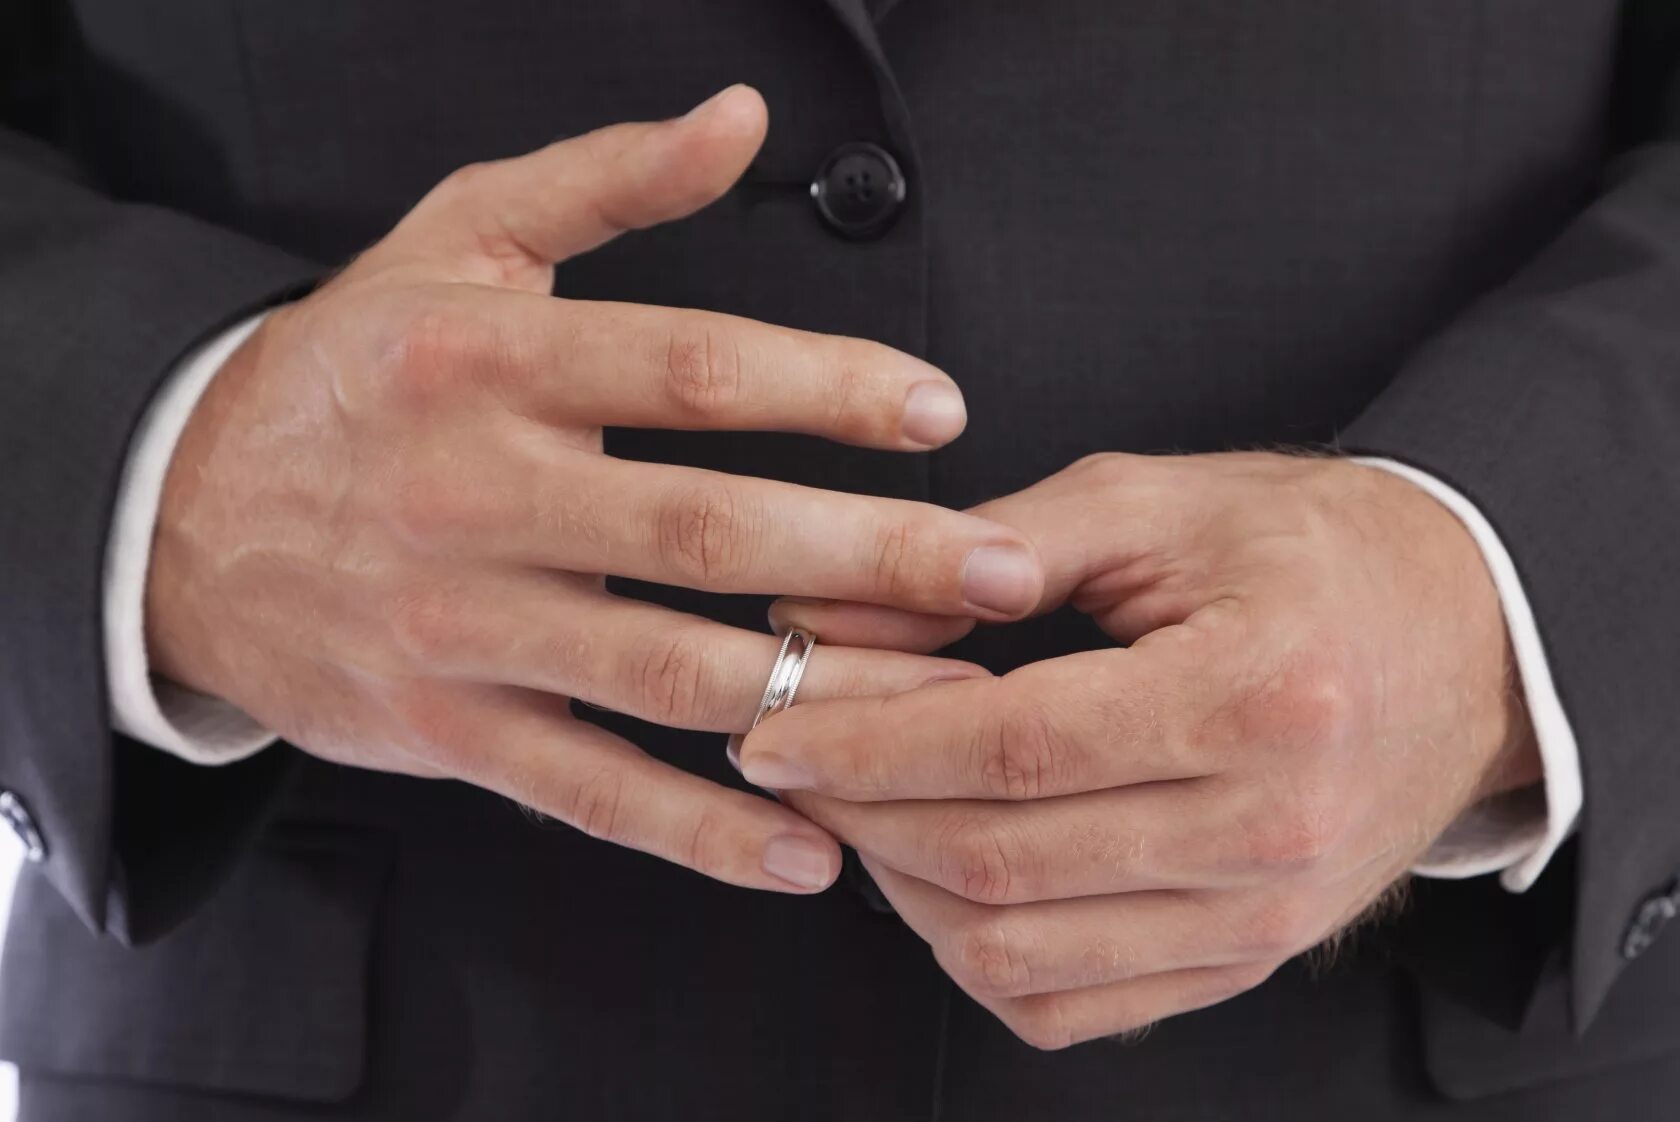 Кольцо на руке. Мужские кольца на руке. Мужские пальцы рук. Мужские обручальные кольца на руке.